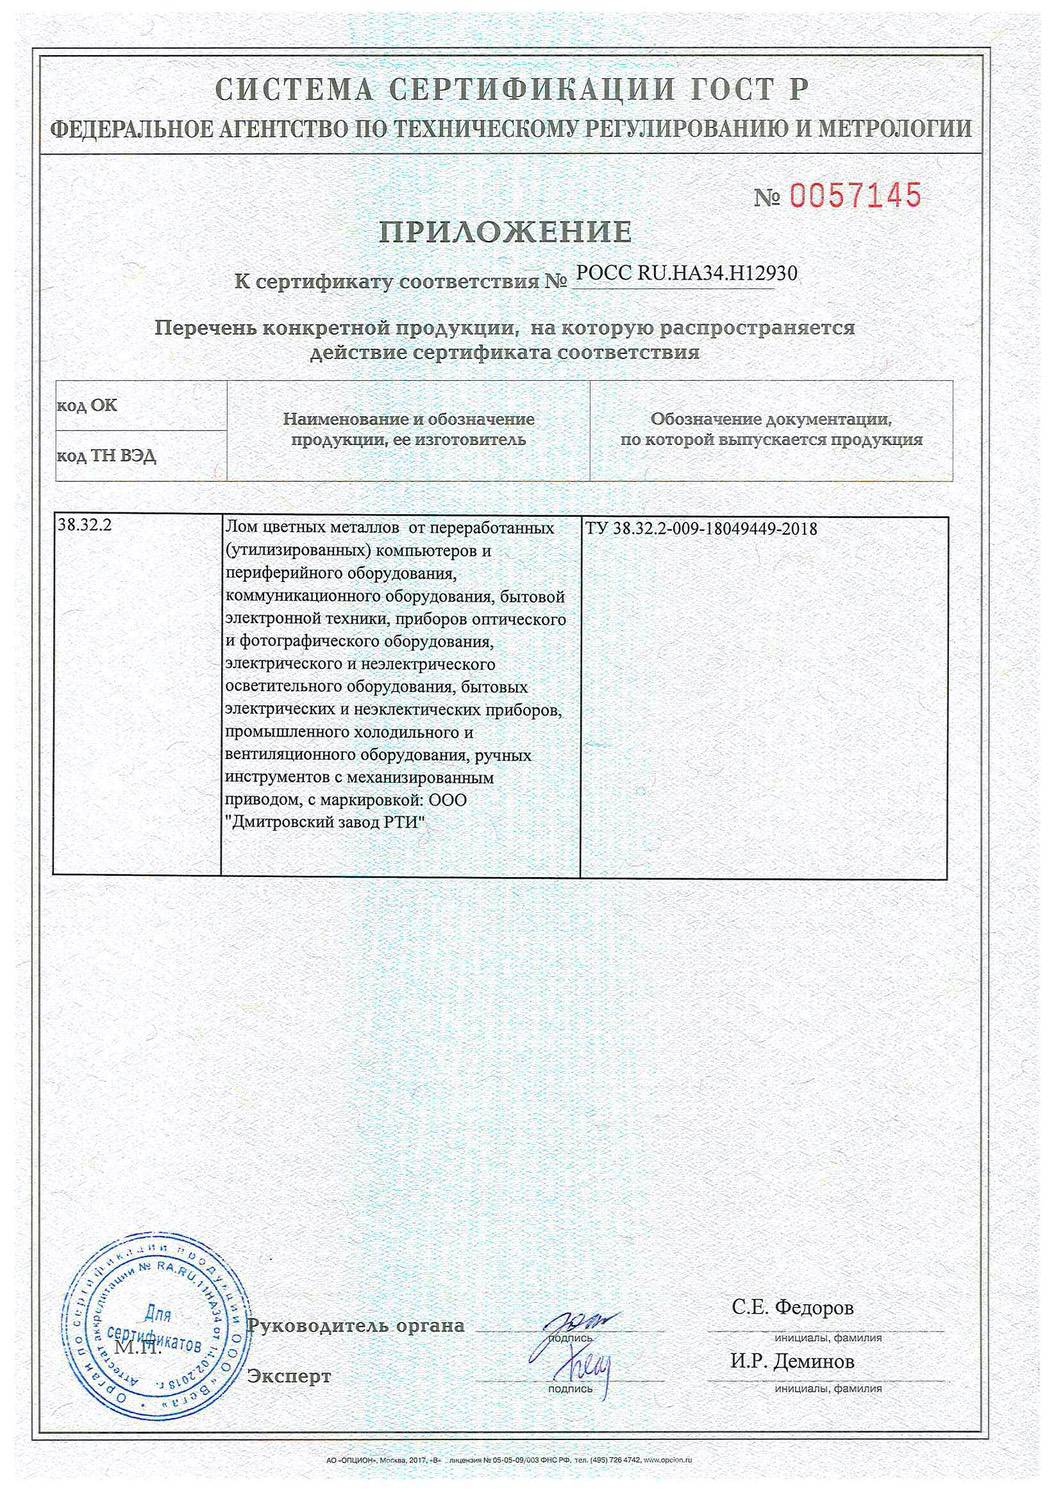 Сертификаты и лицензии ДЗРТИ